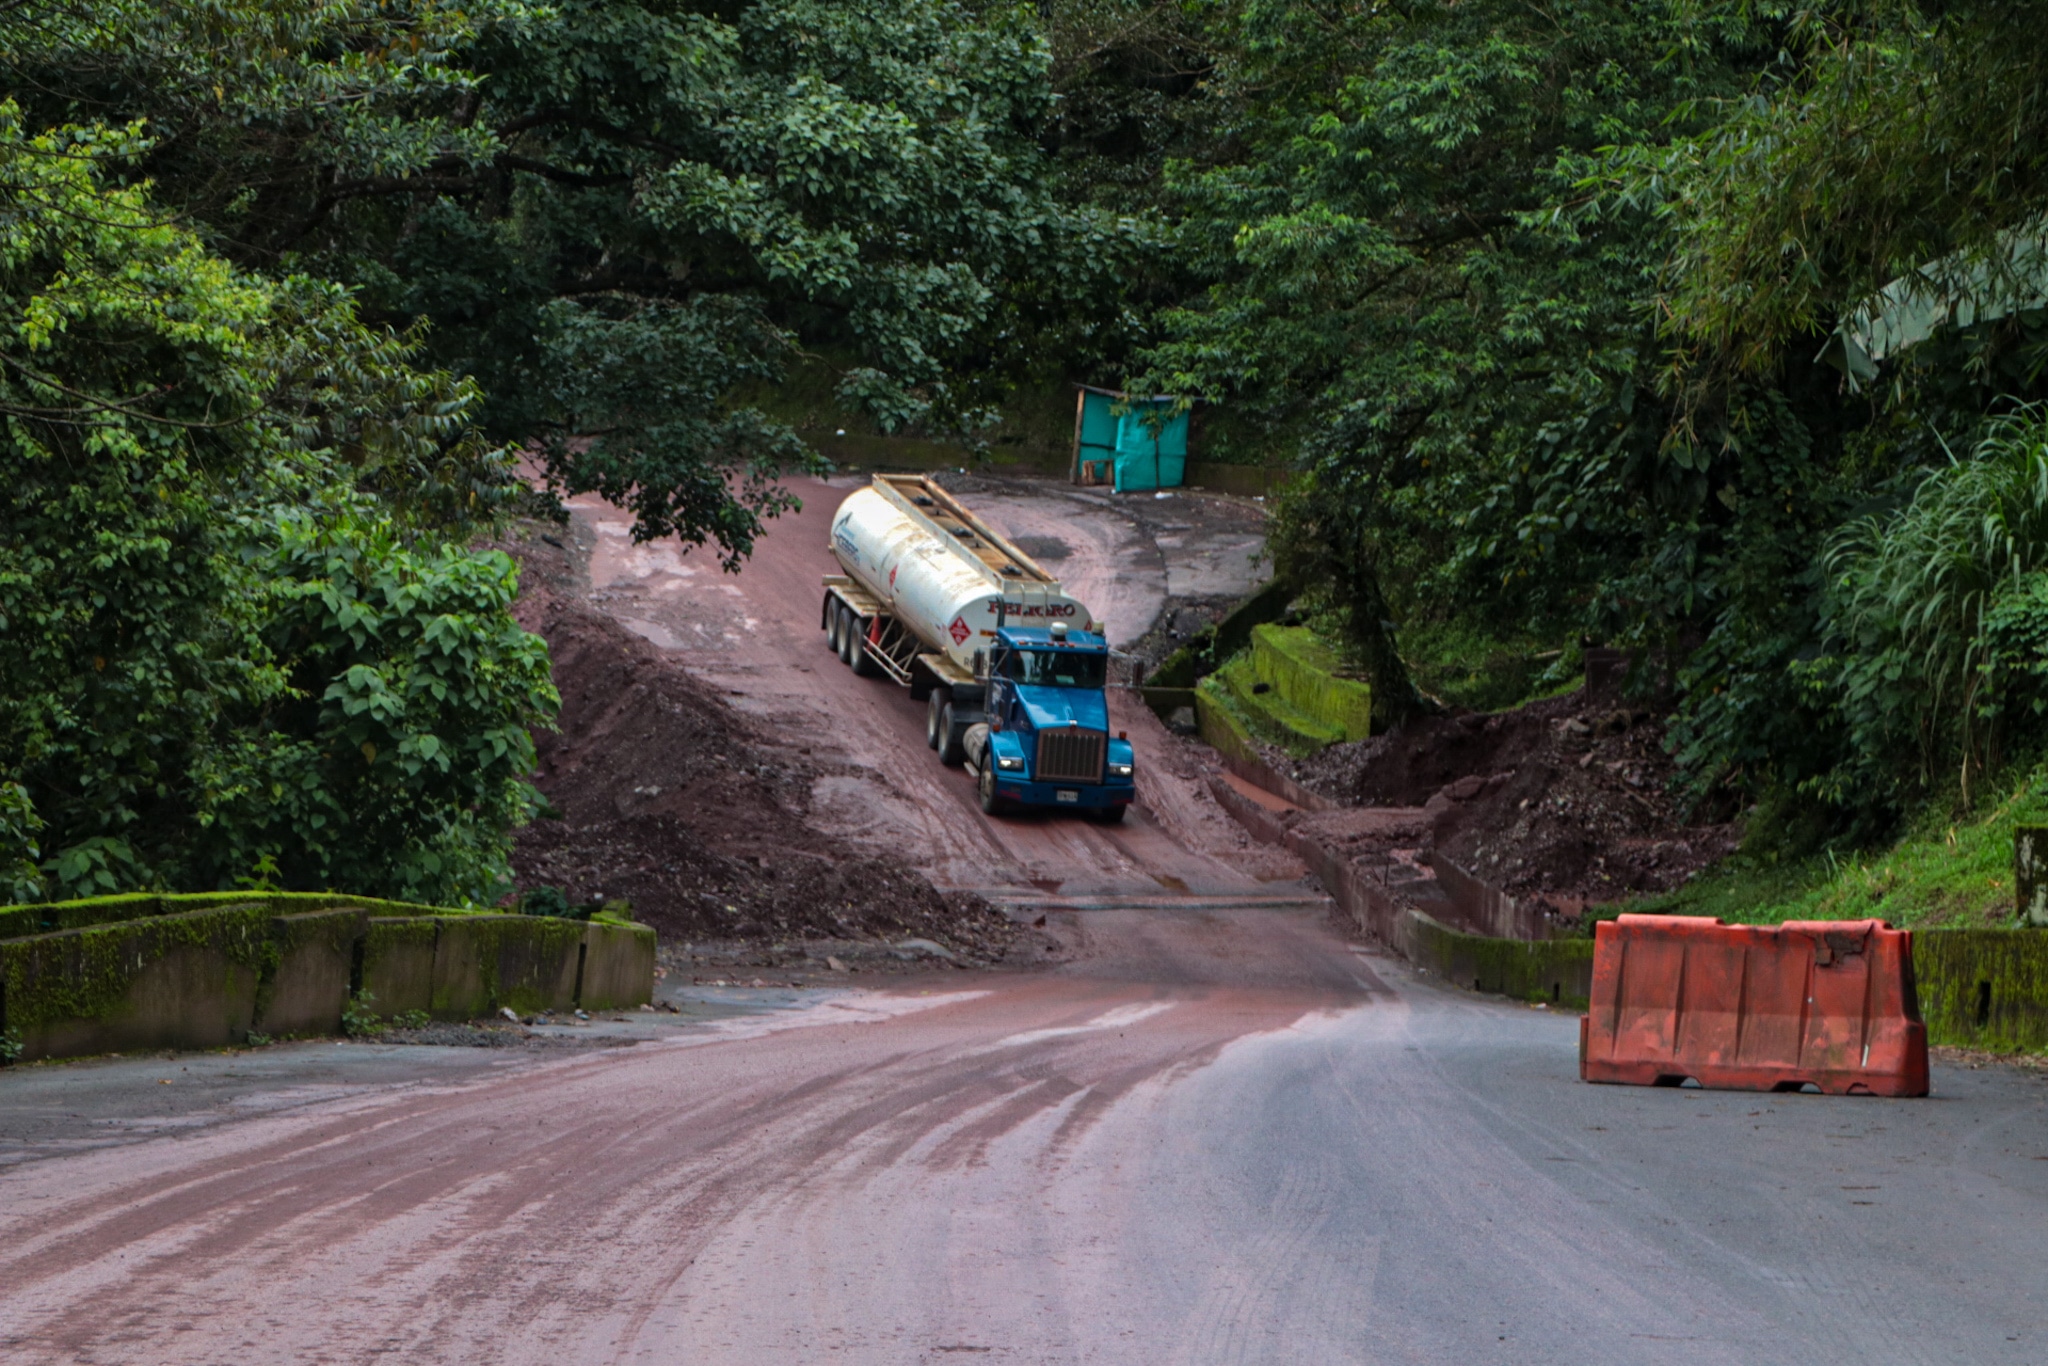 Gestión del Riesgo revisó puntos críticos del sector de “Rompe ejes” en la vía antigua Bogotá-Villavicencio